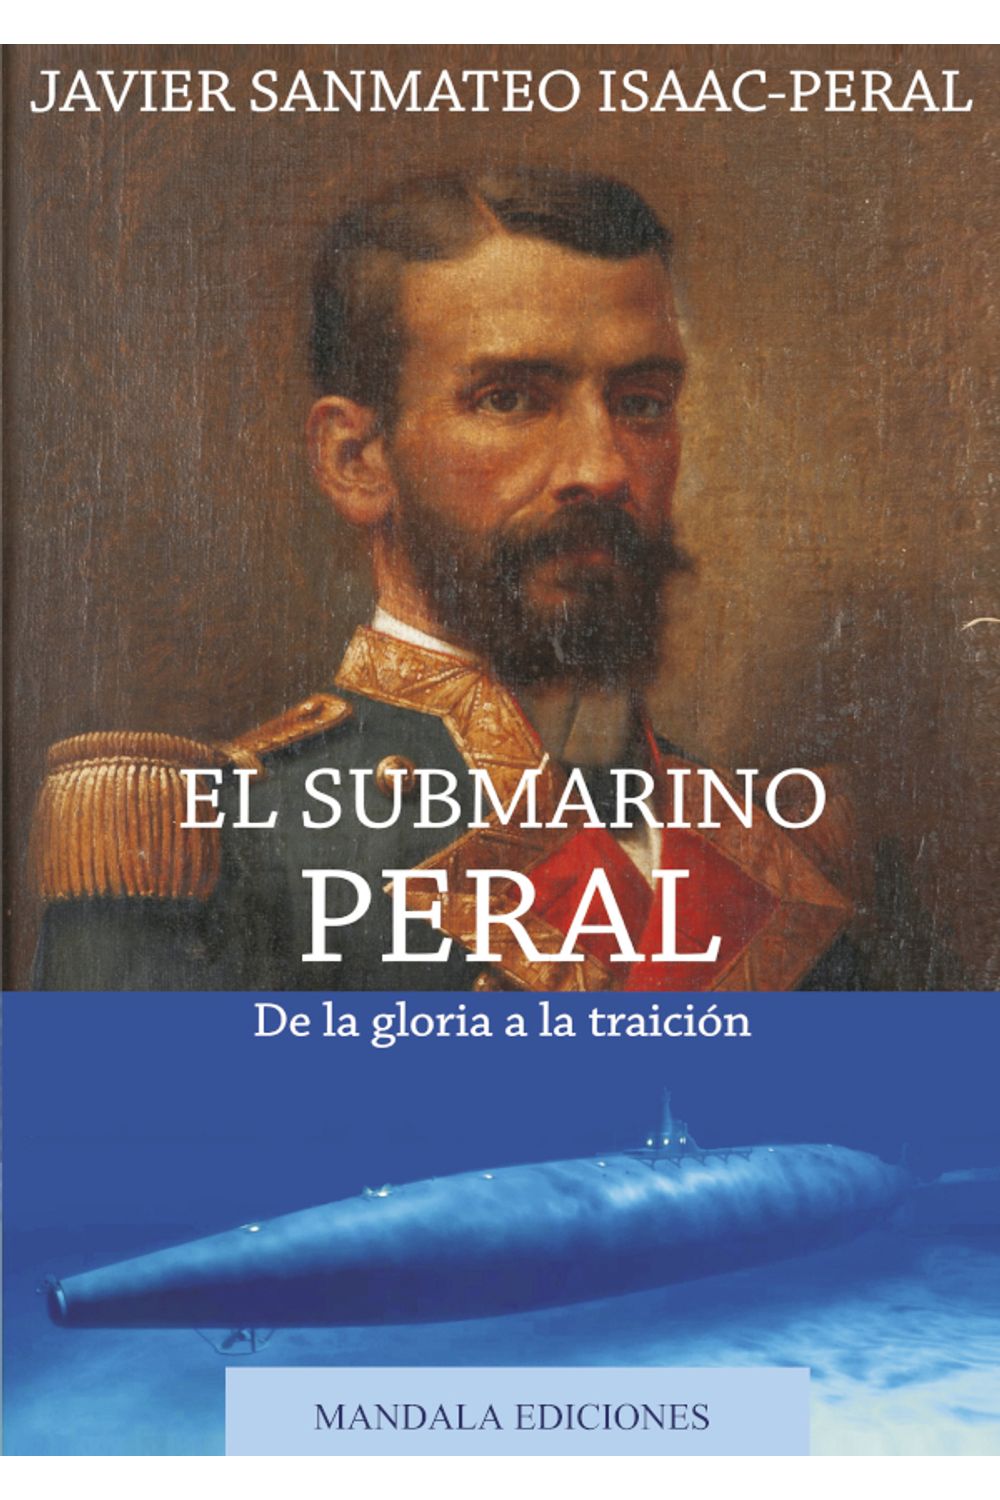 bm-el-submarino-peral-de-la-gloria-a-la-traicion-ediciones-literarias-mandala-9788416765805